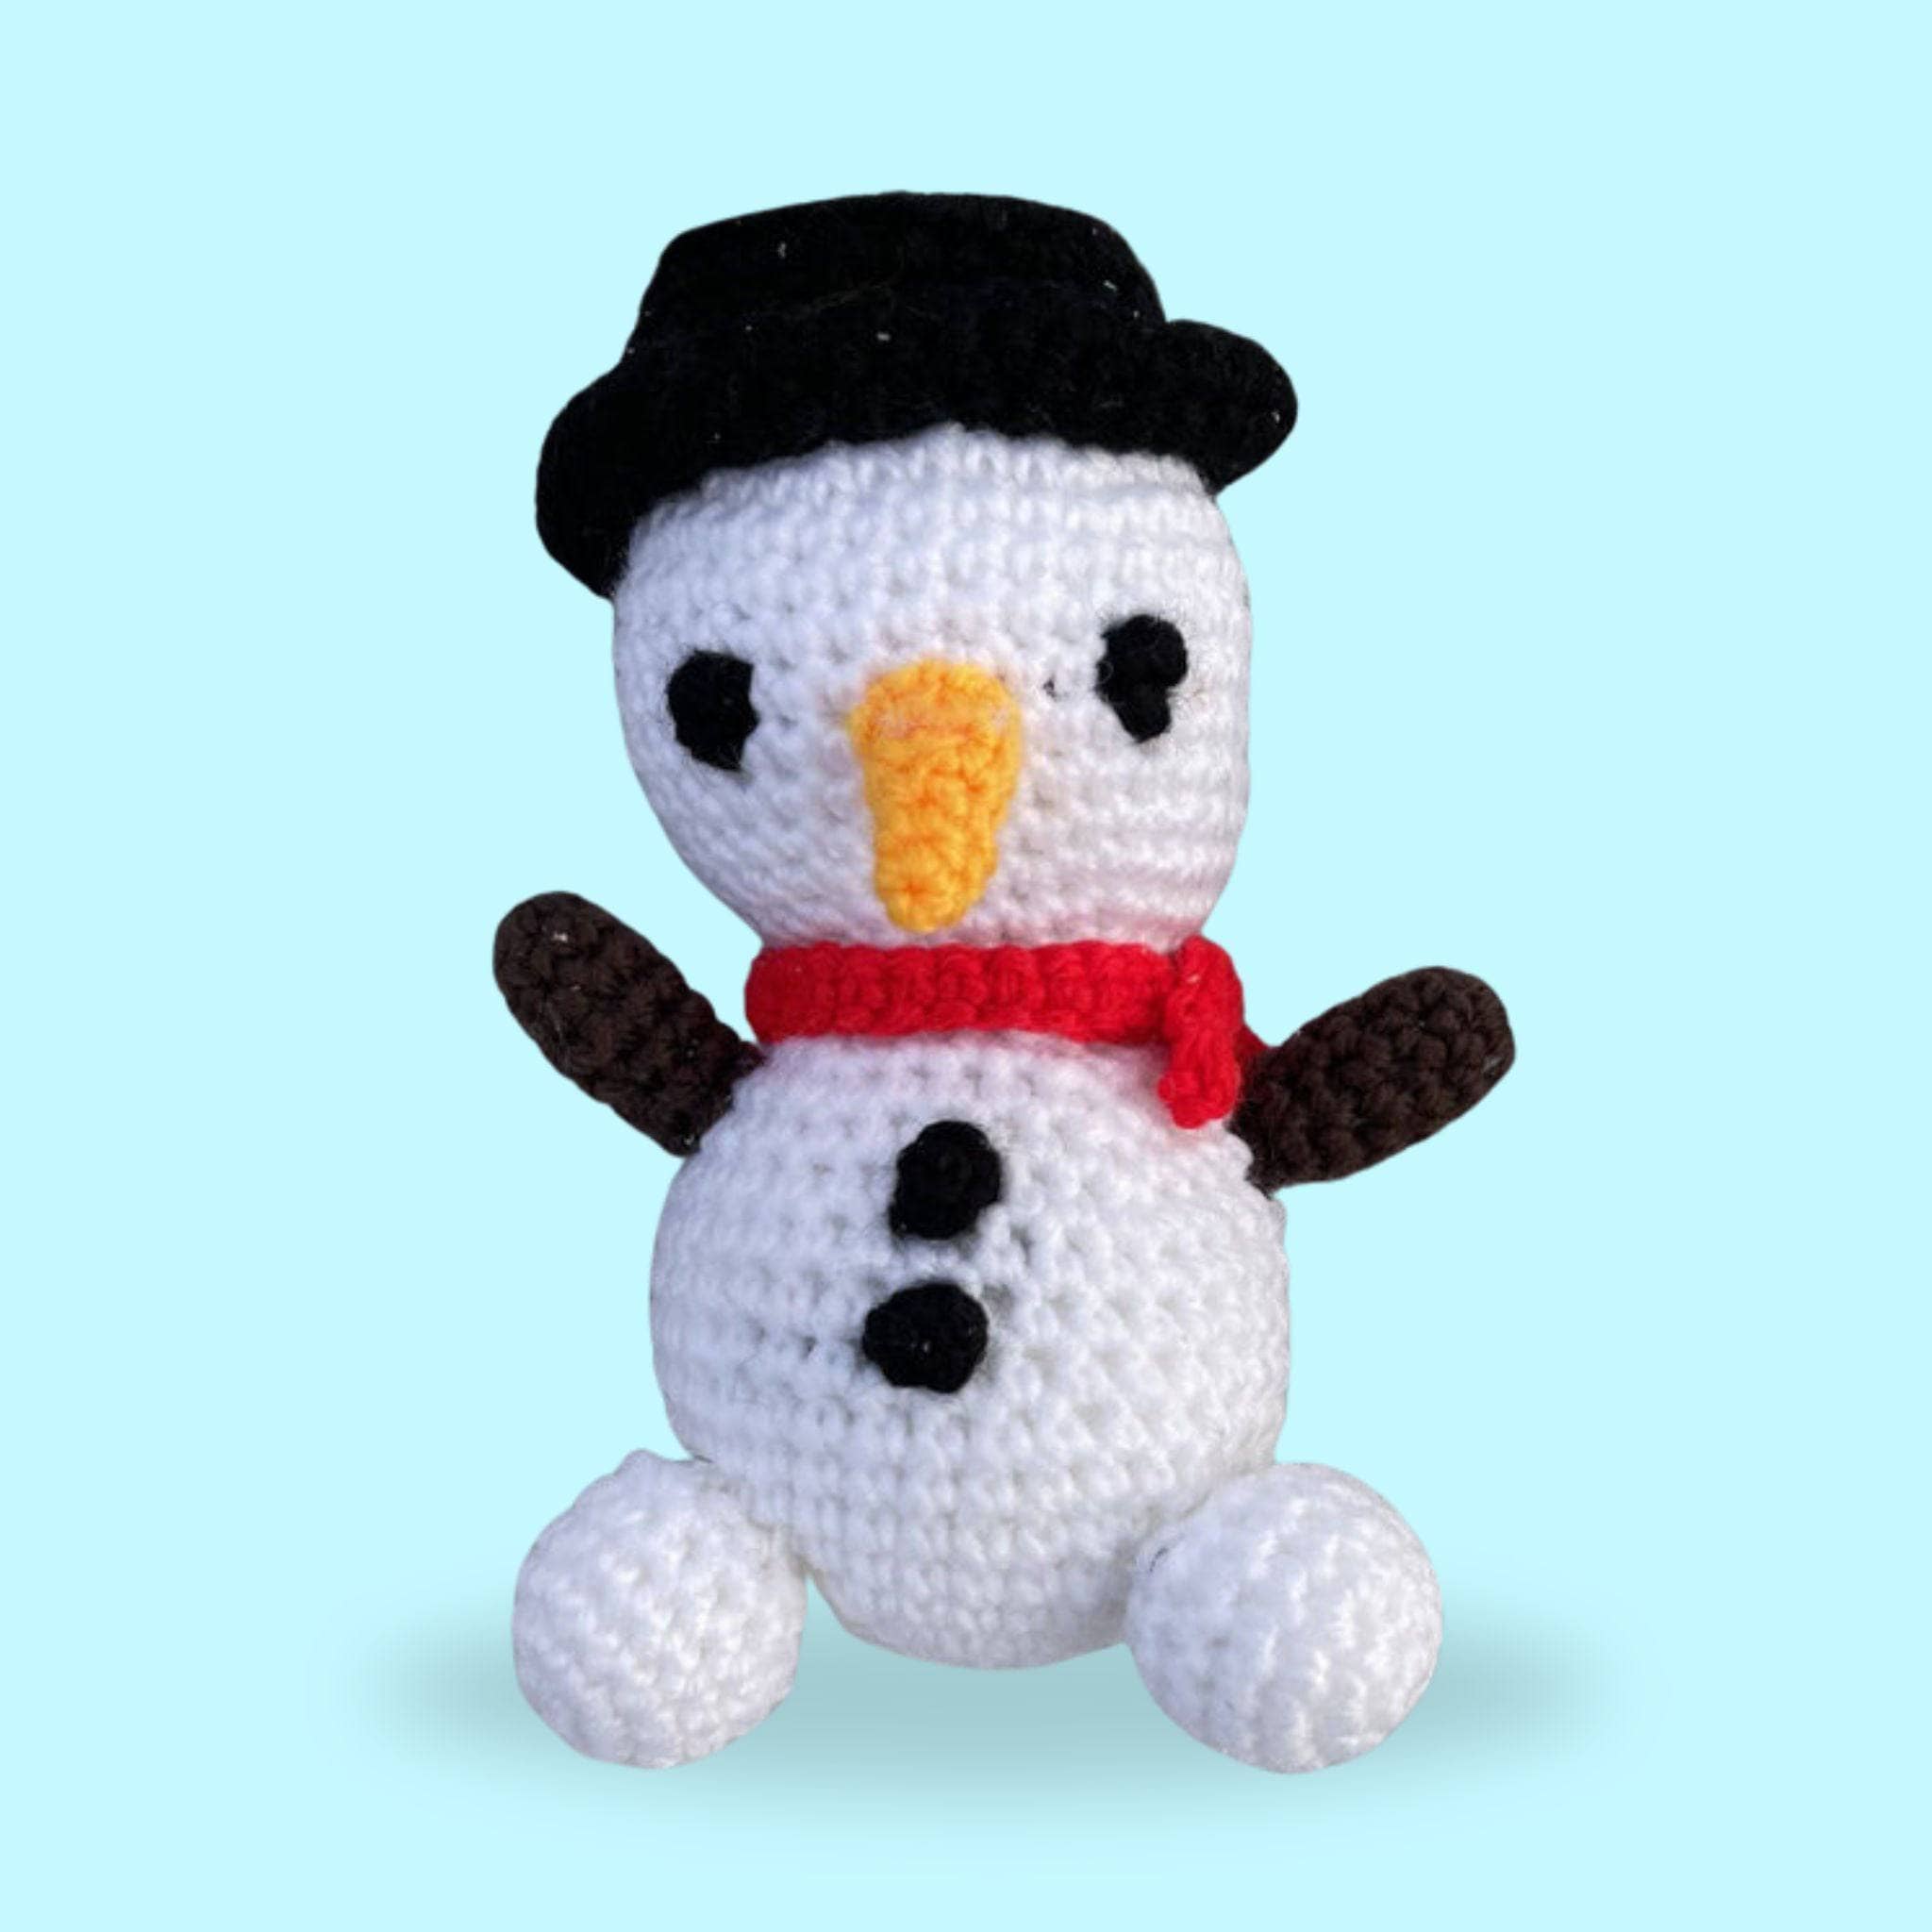 Circulo - Snowman Amigurumi Kit - Yarn Loop